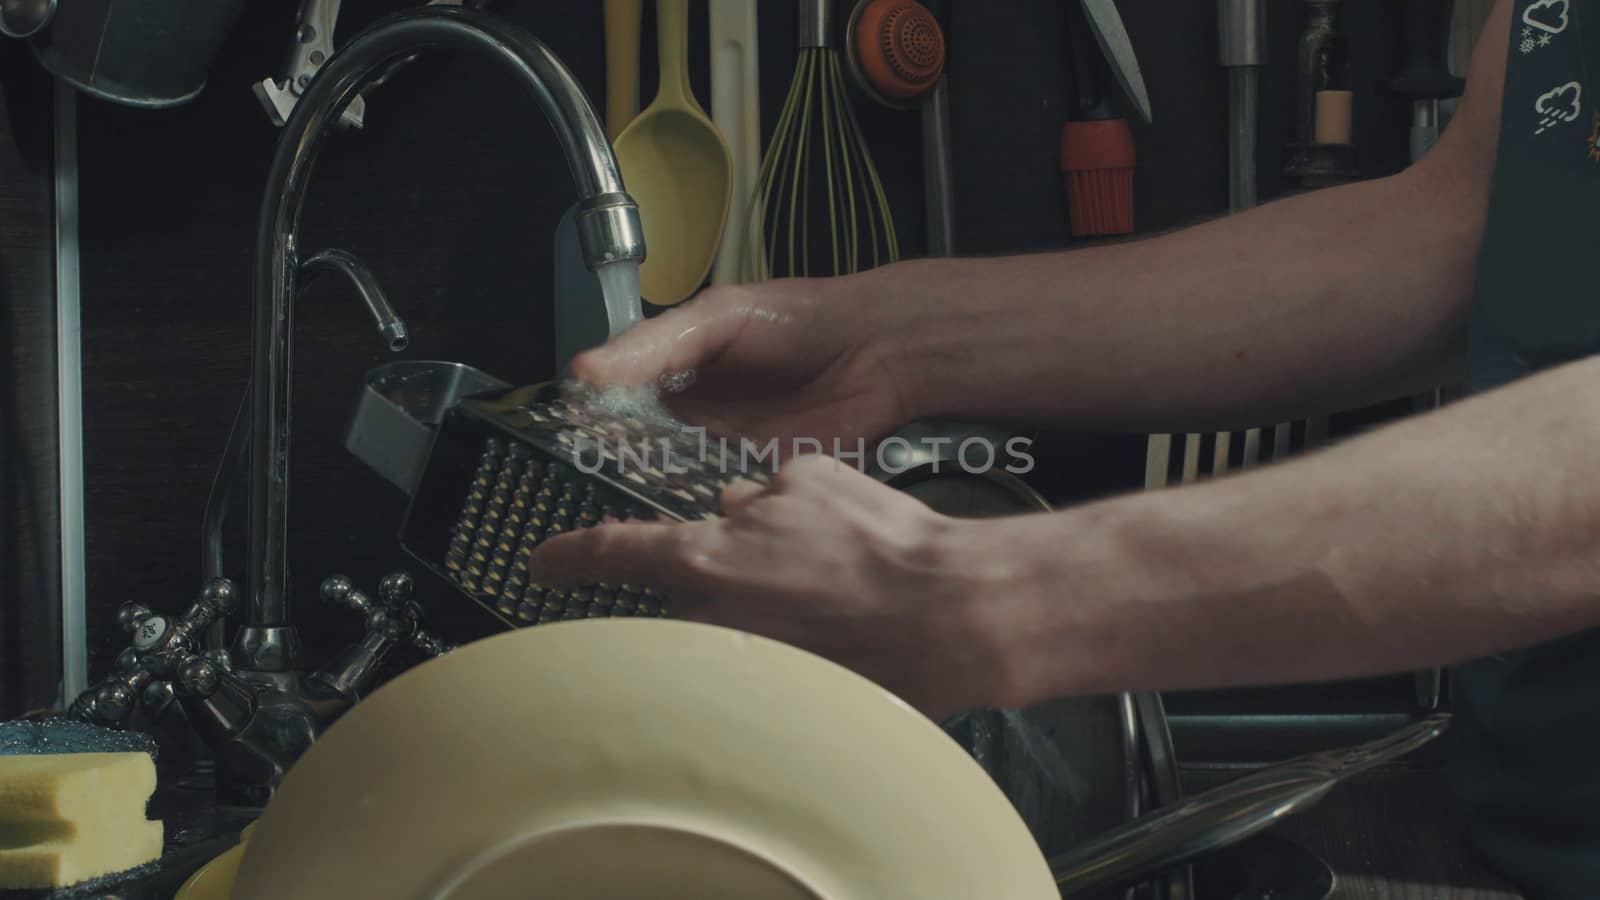 Man's hands washing dishes by Chudakov